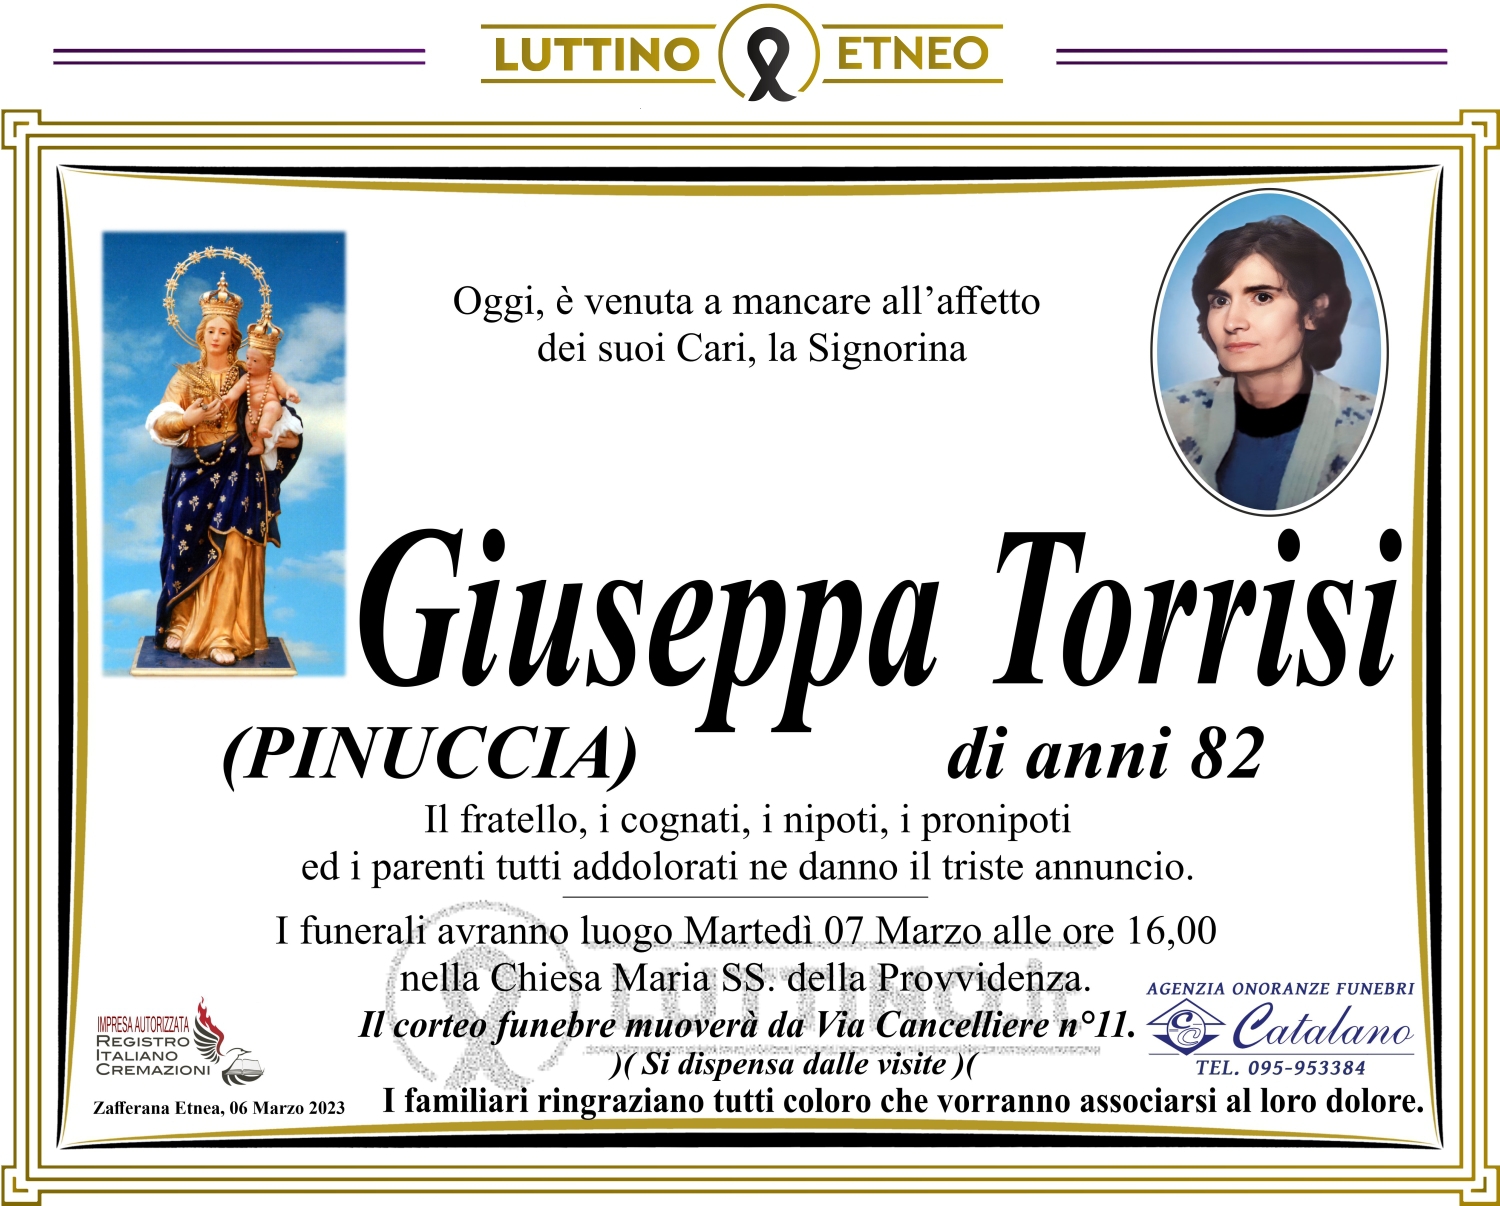 Giuseppa Torrisi